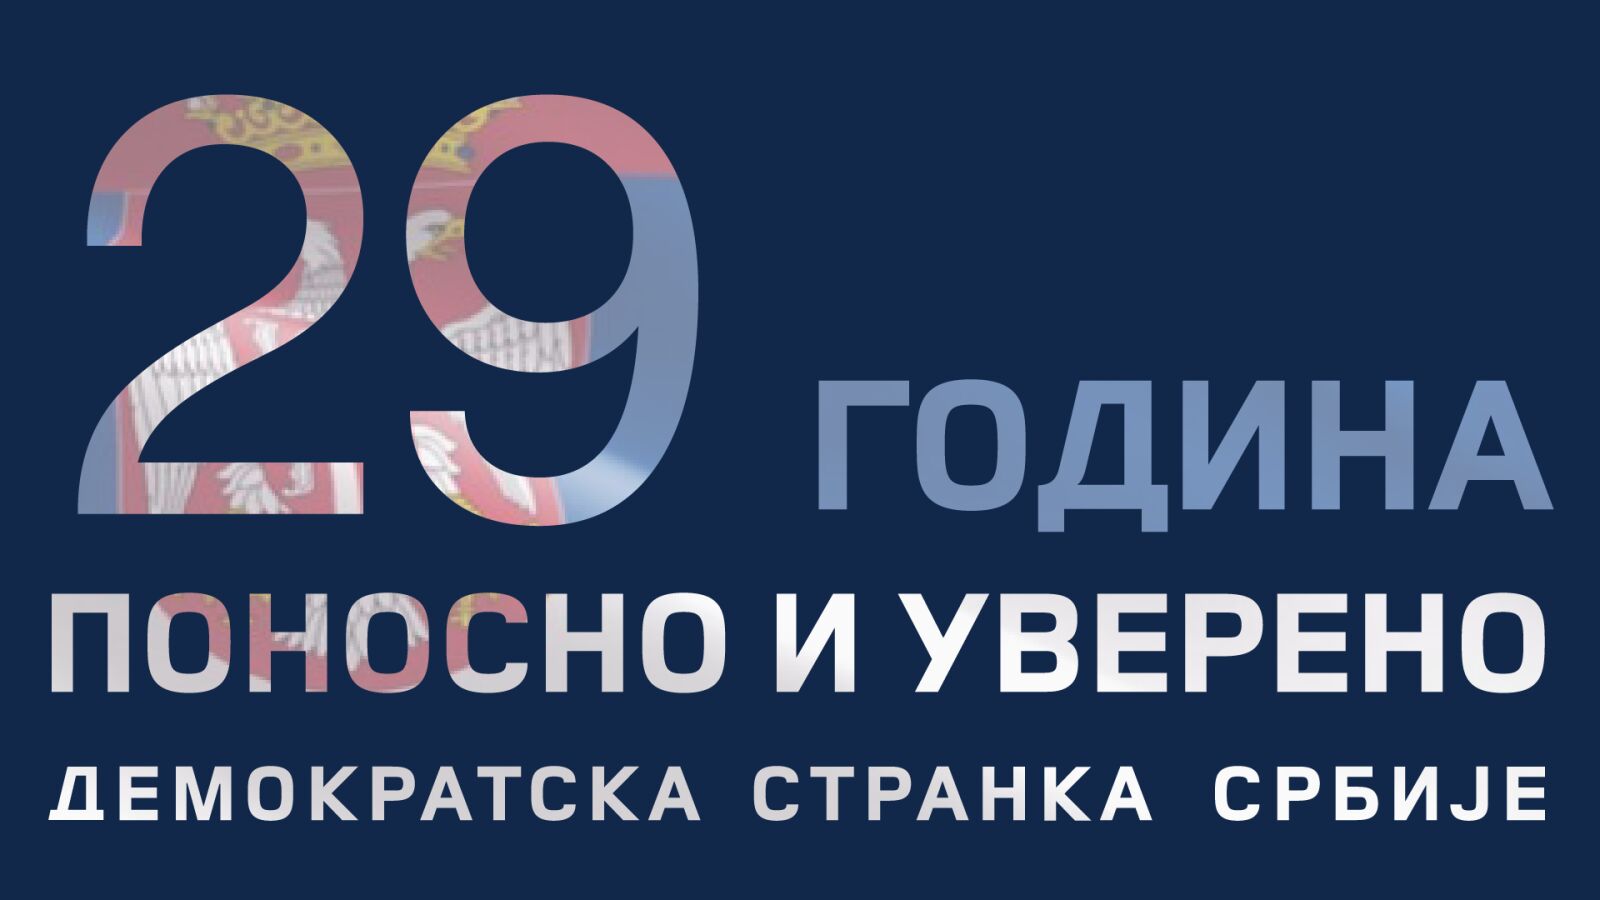 Dvadeset deveta godišnjica osnivanja Demokratske stranke Srbije